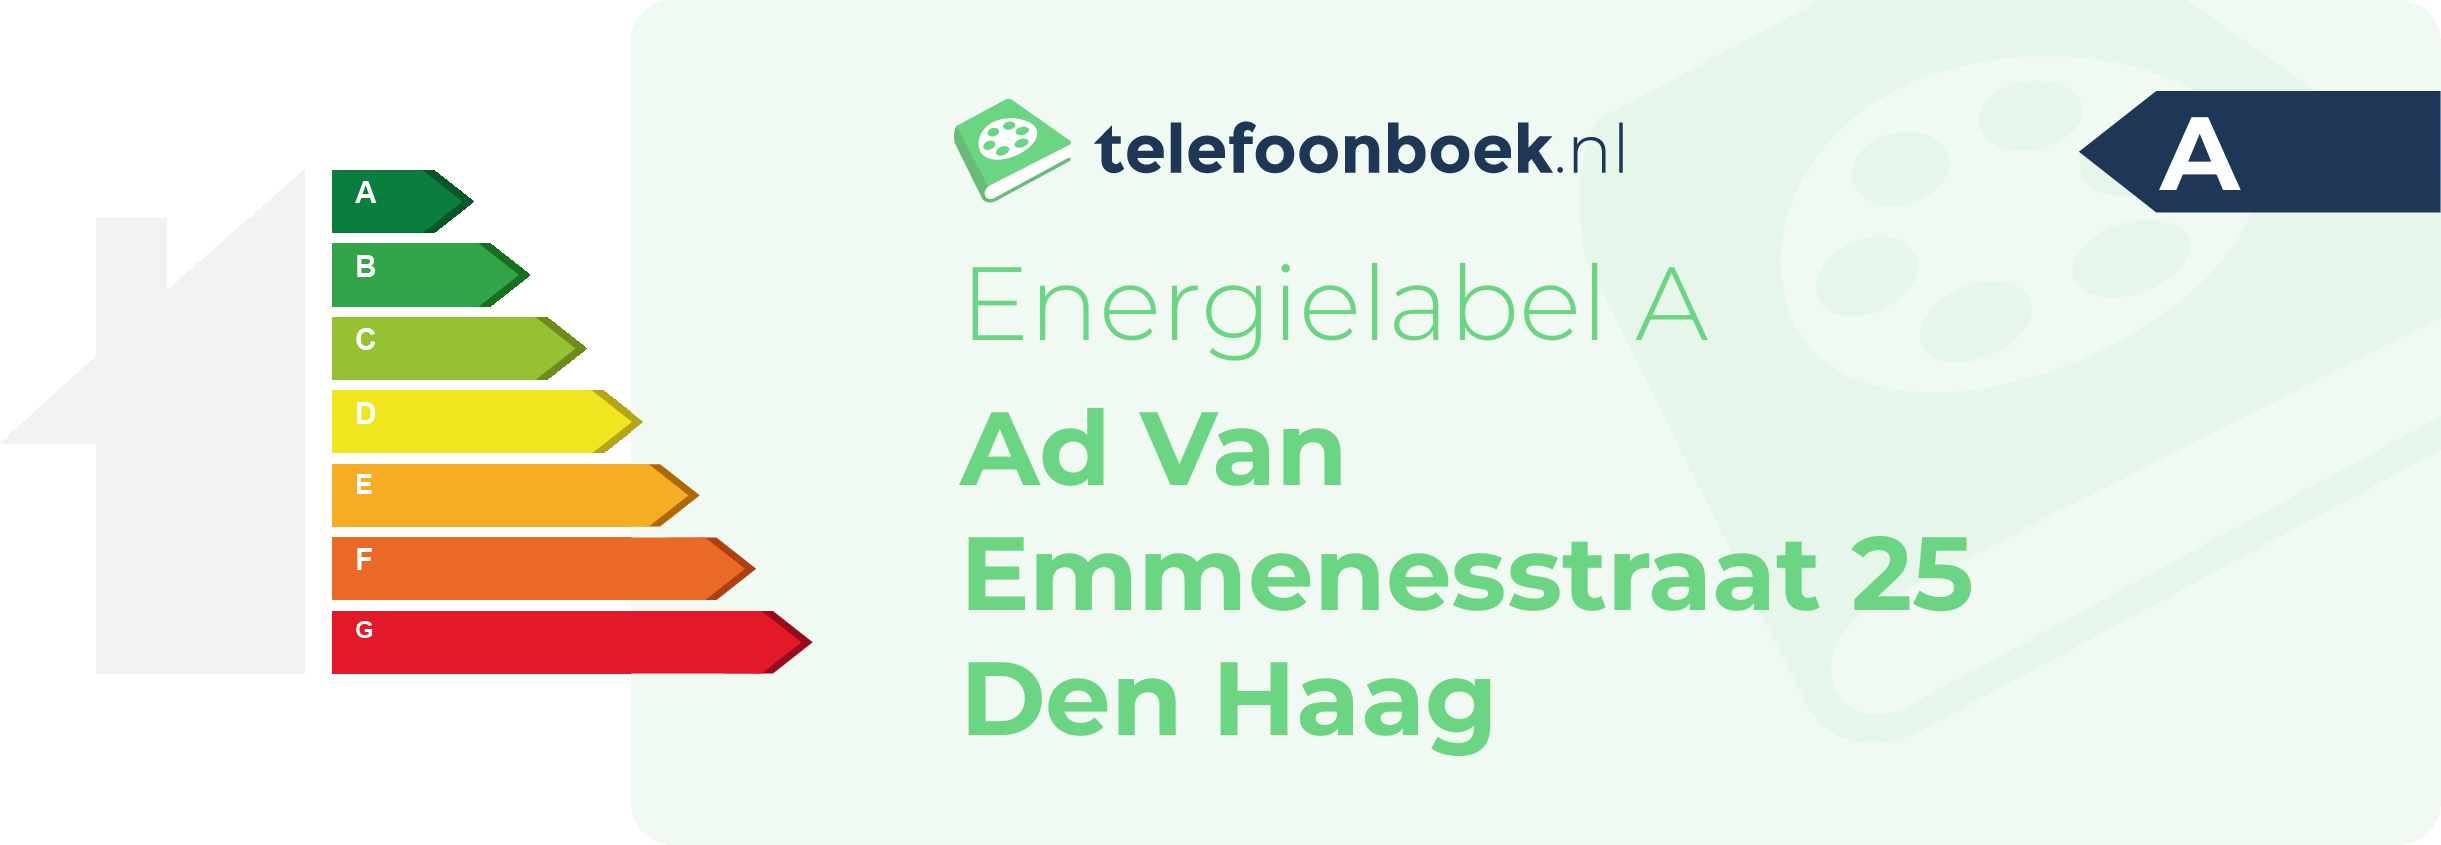 Energielabel Ad Van Emmenesstraat 25 Den Haag